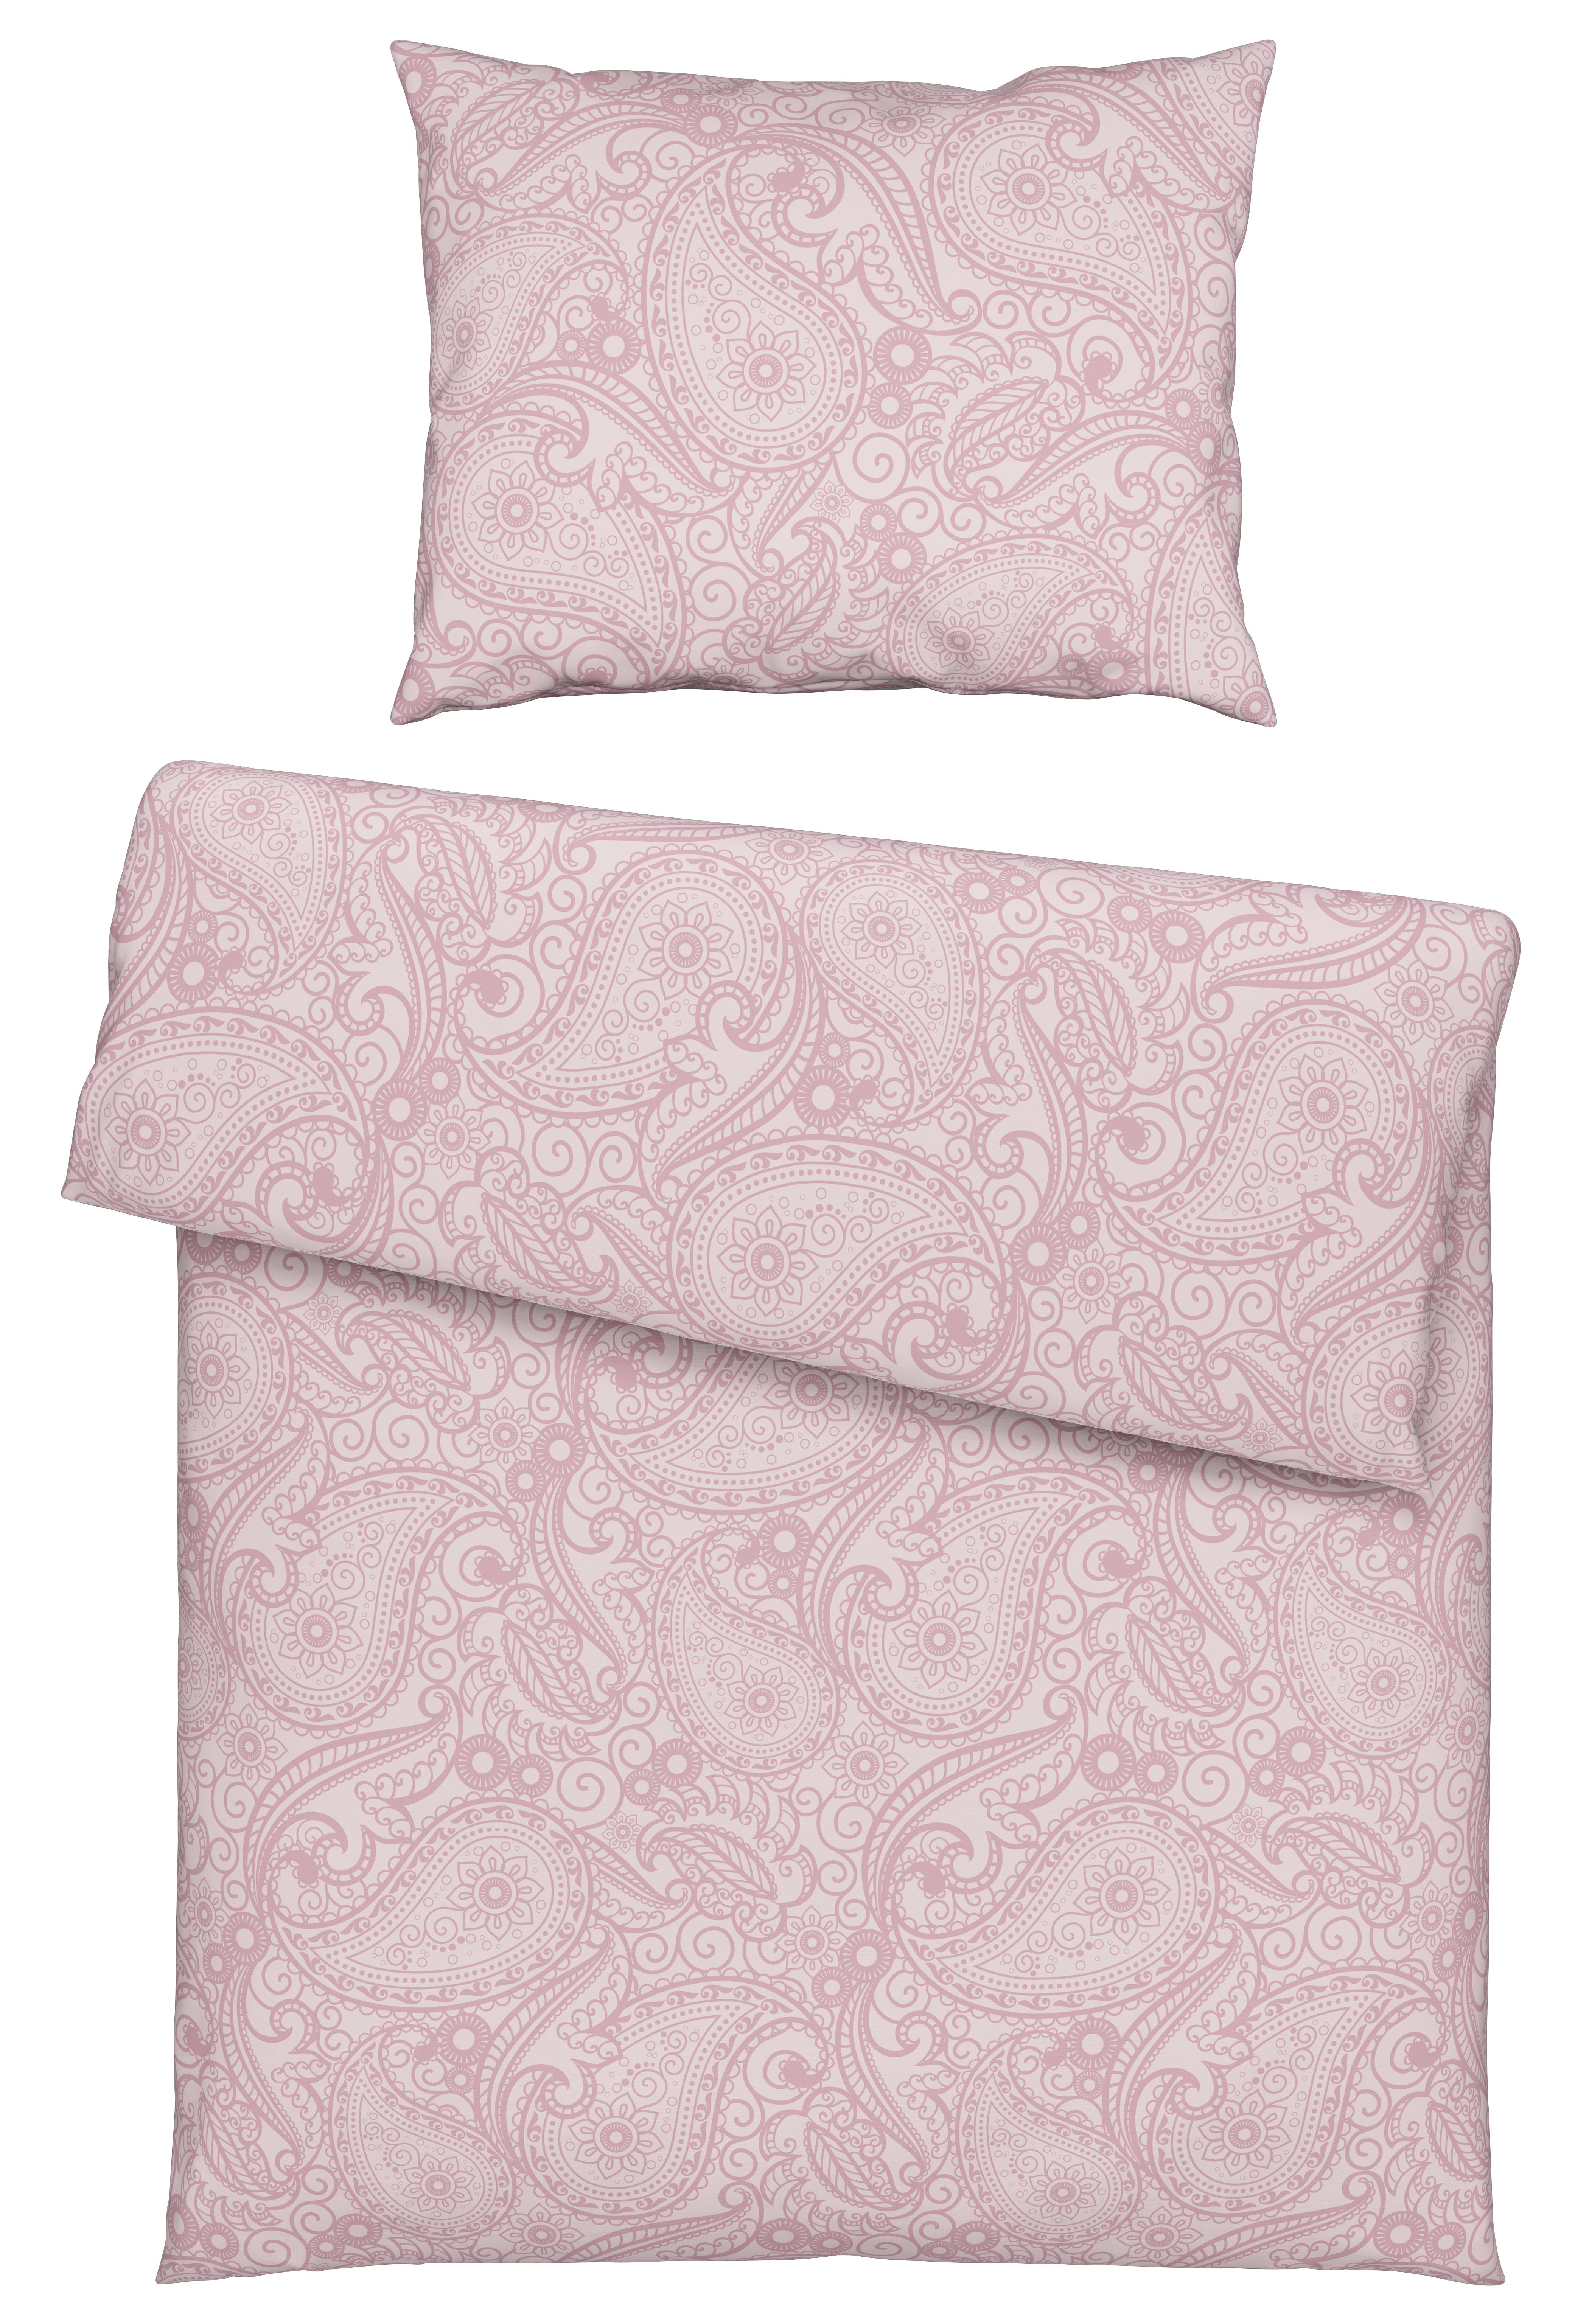 Lenjerie de pat Paisley - roz, Konventionell, textil (140/200cm) - Modern Living